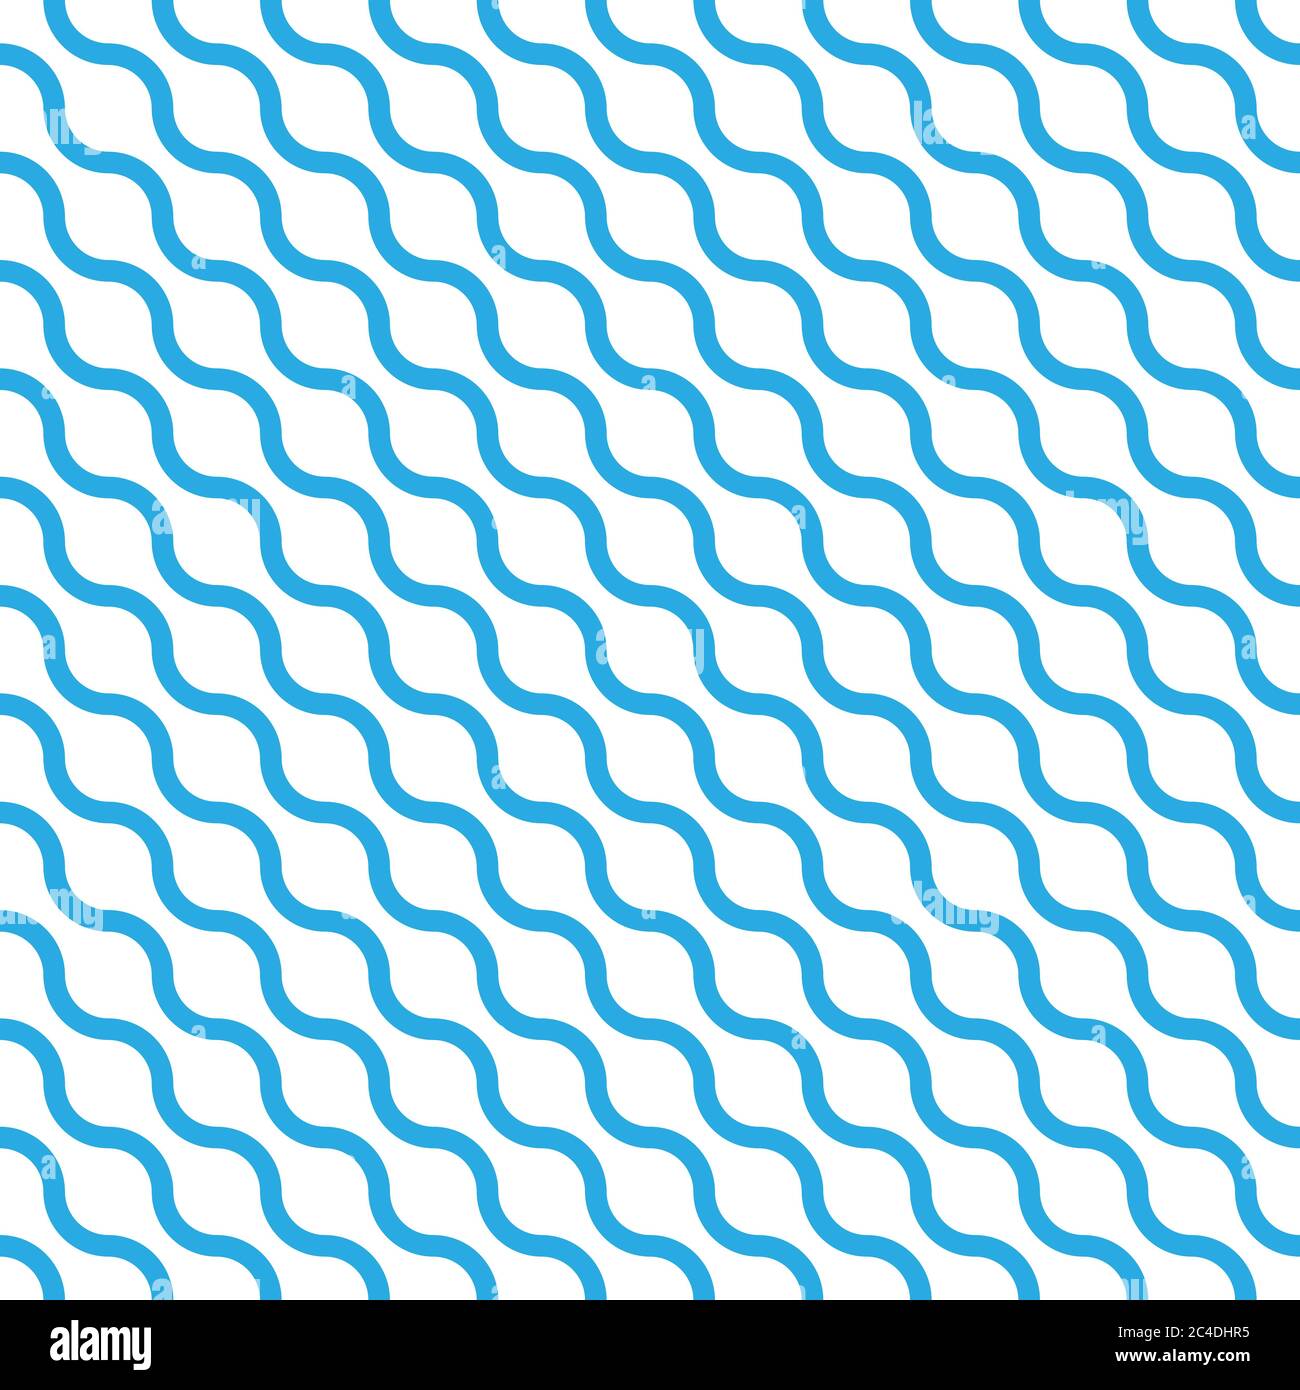 Abstraktes Nahtloses Muster mit blauen Wellen in diagonaler Anordnung auf weißem Hintergrund. Einfache flache geometrische Vektorgrafik. Stock Vektor